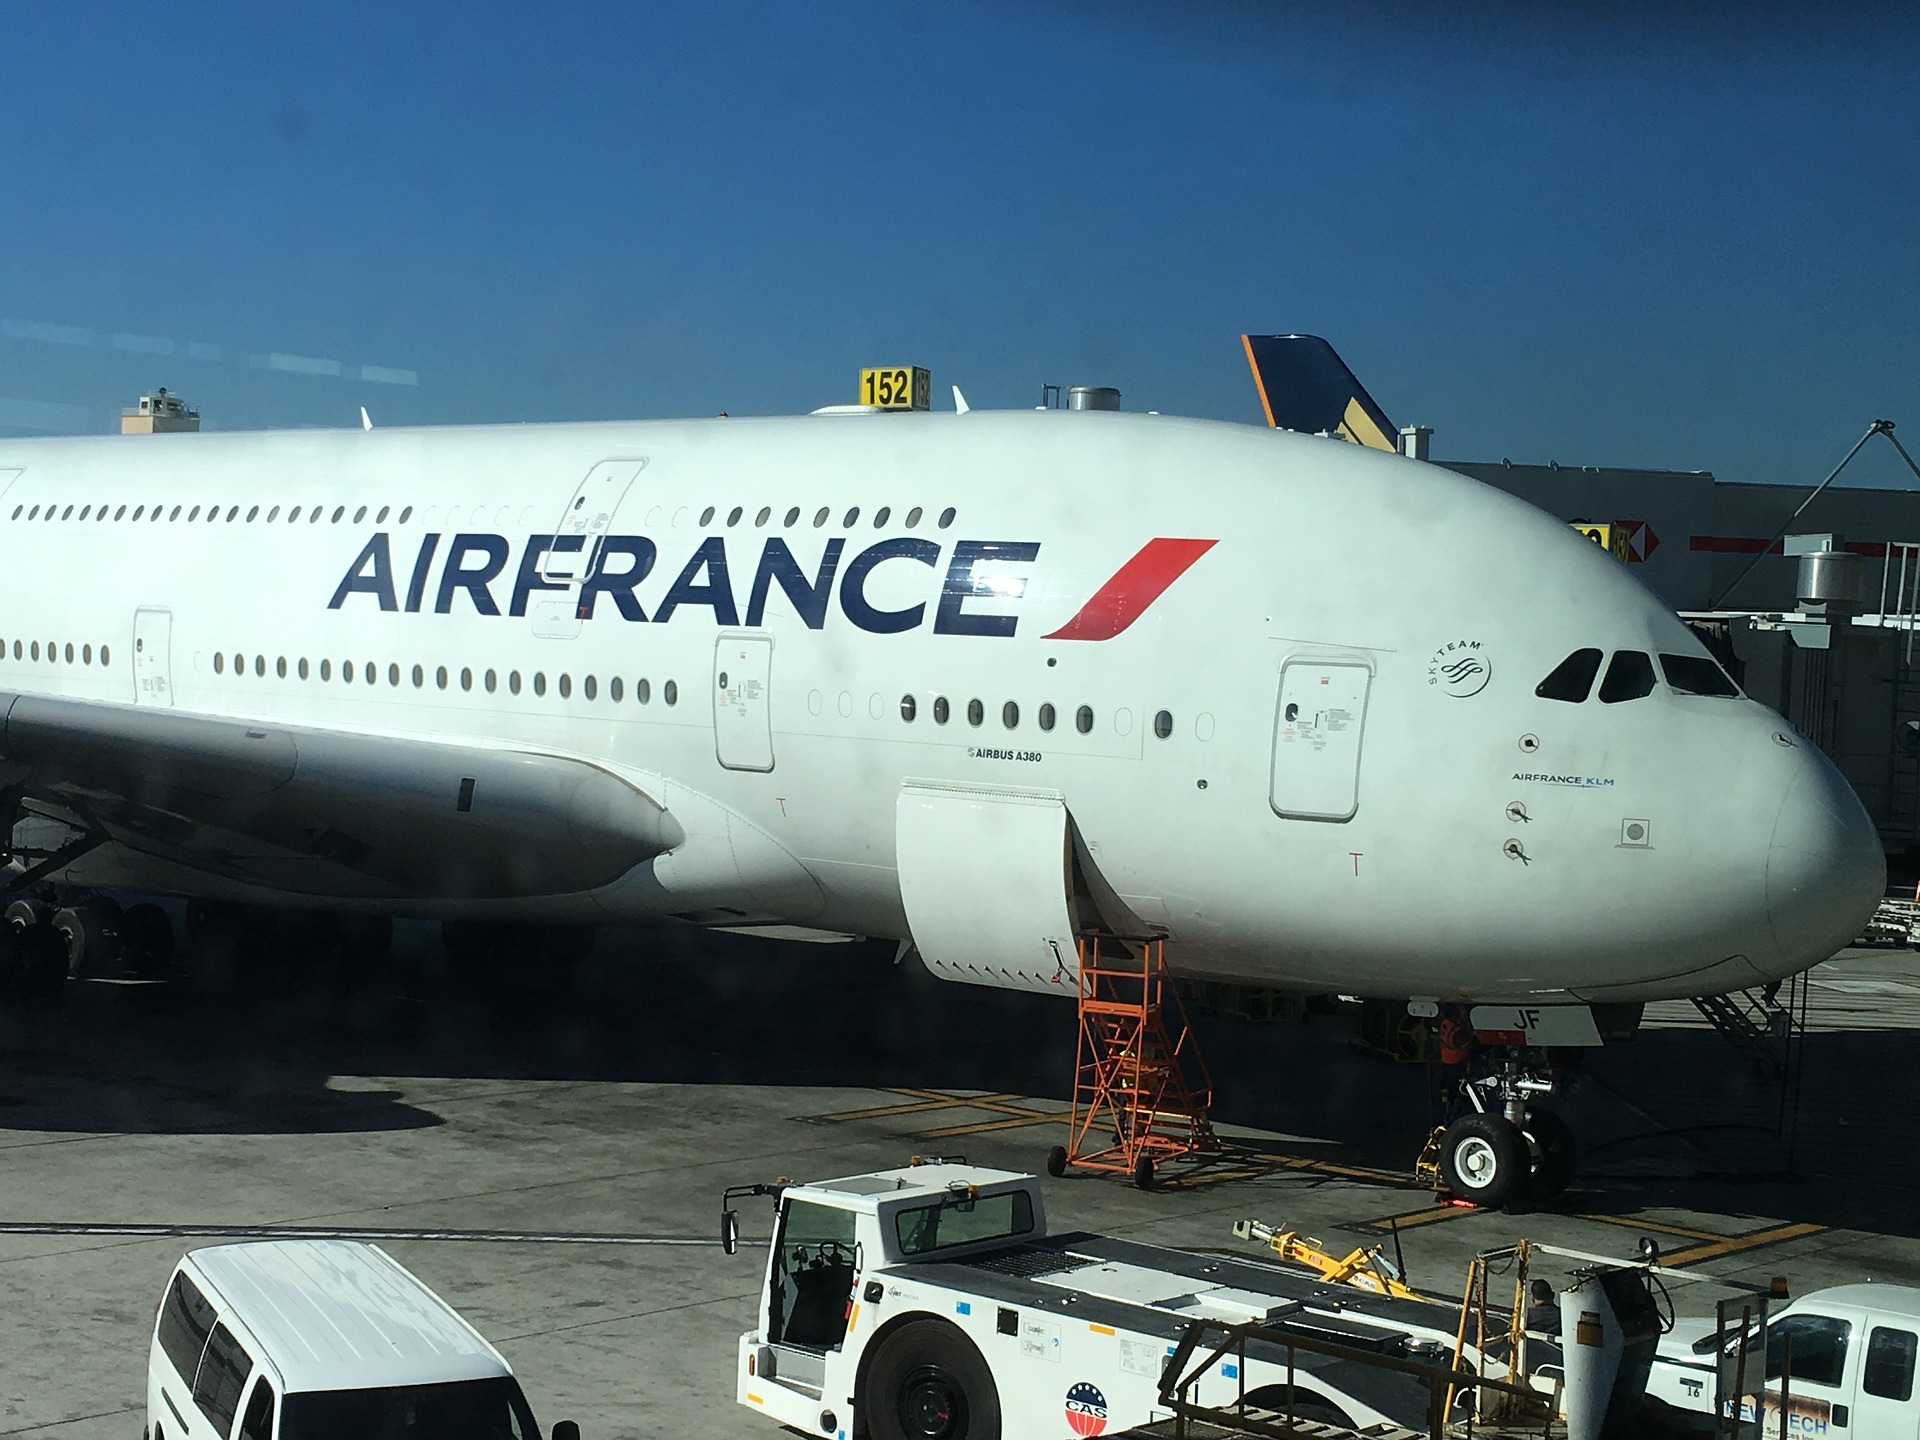 Air France : qui est Benjamin Smith, le nouveau PDG ?